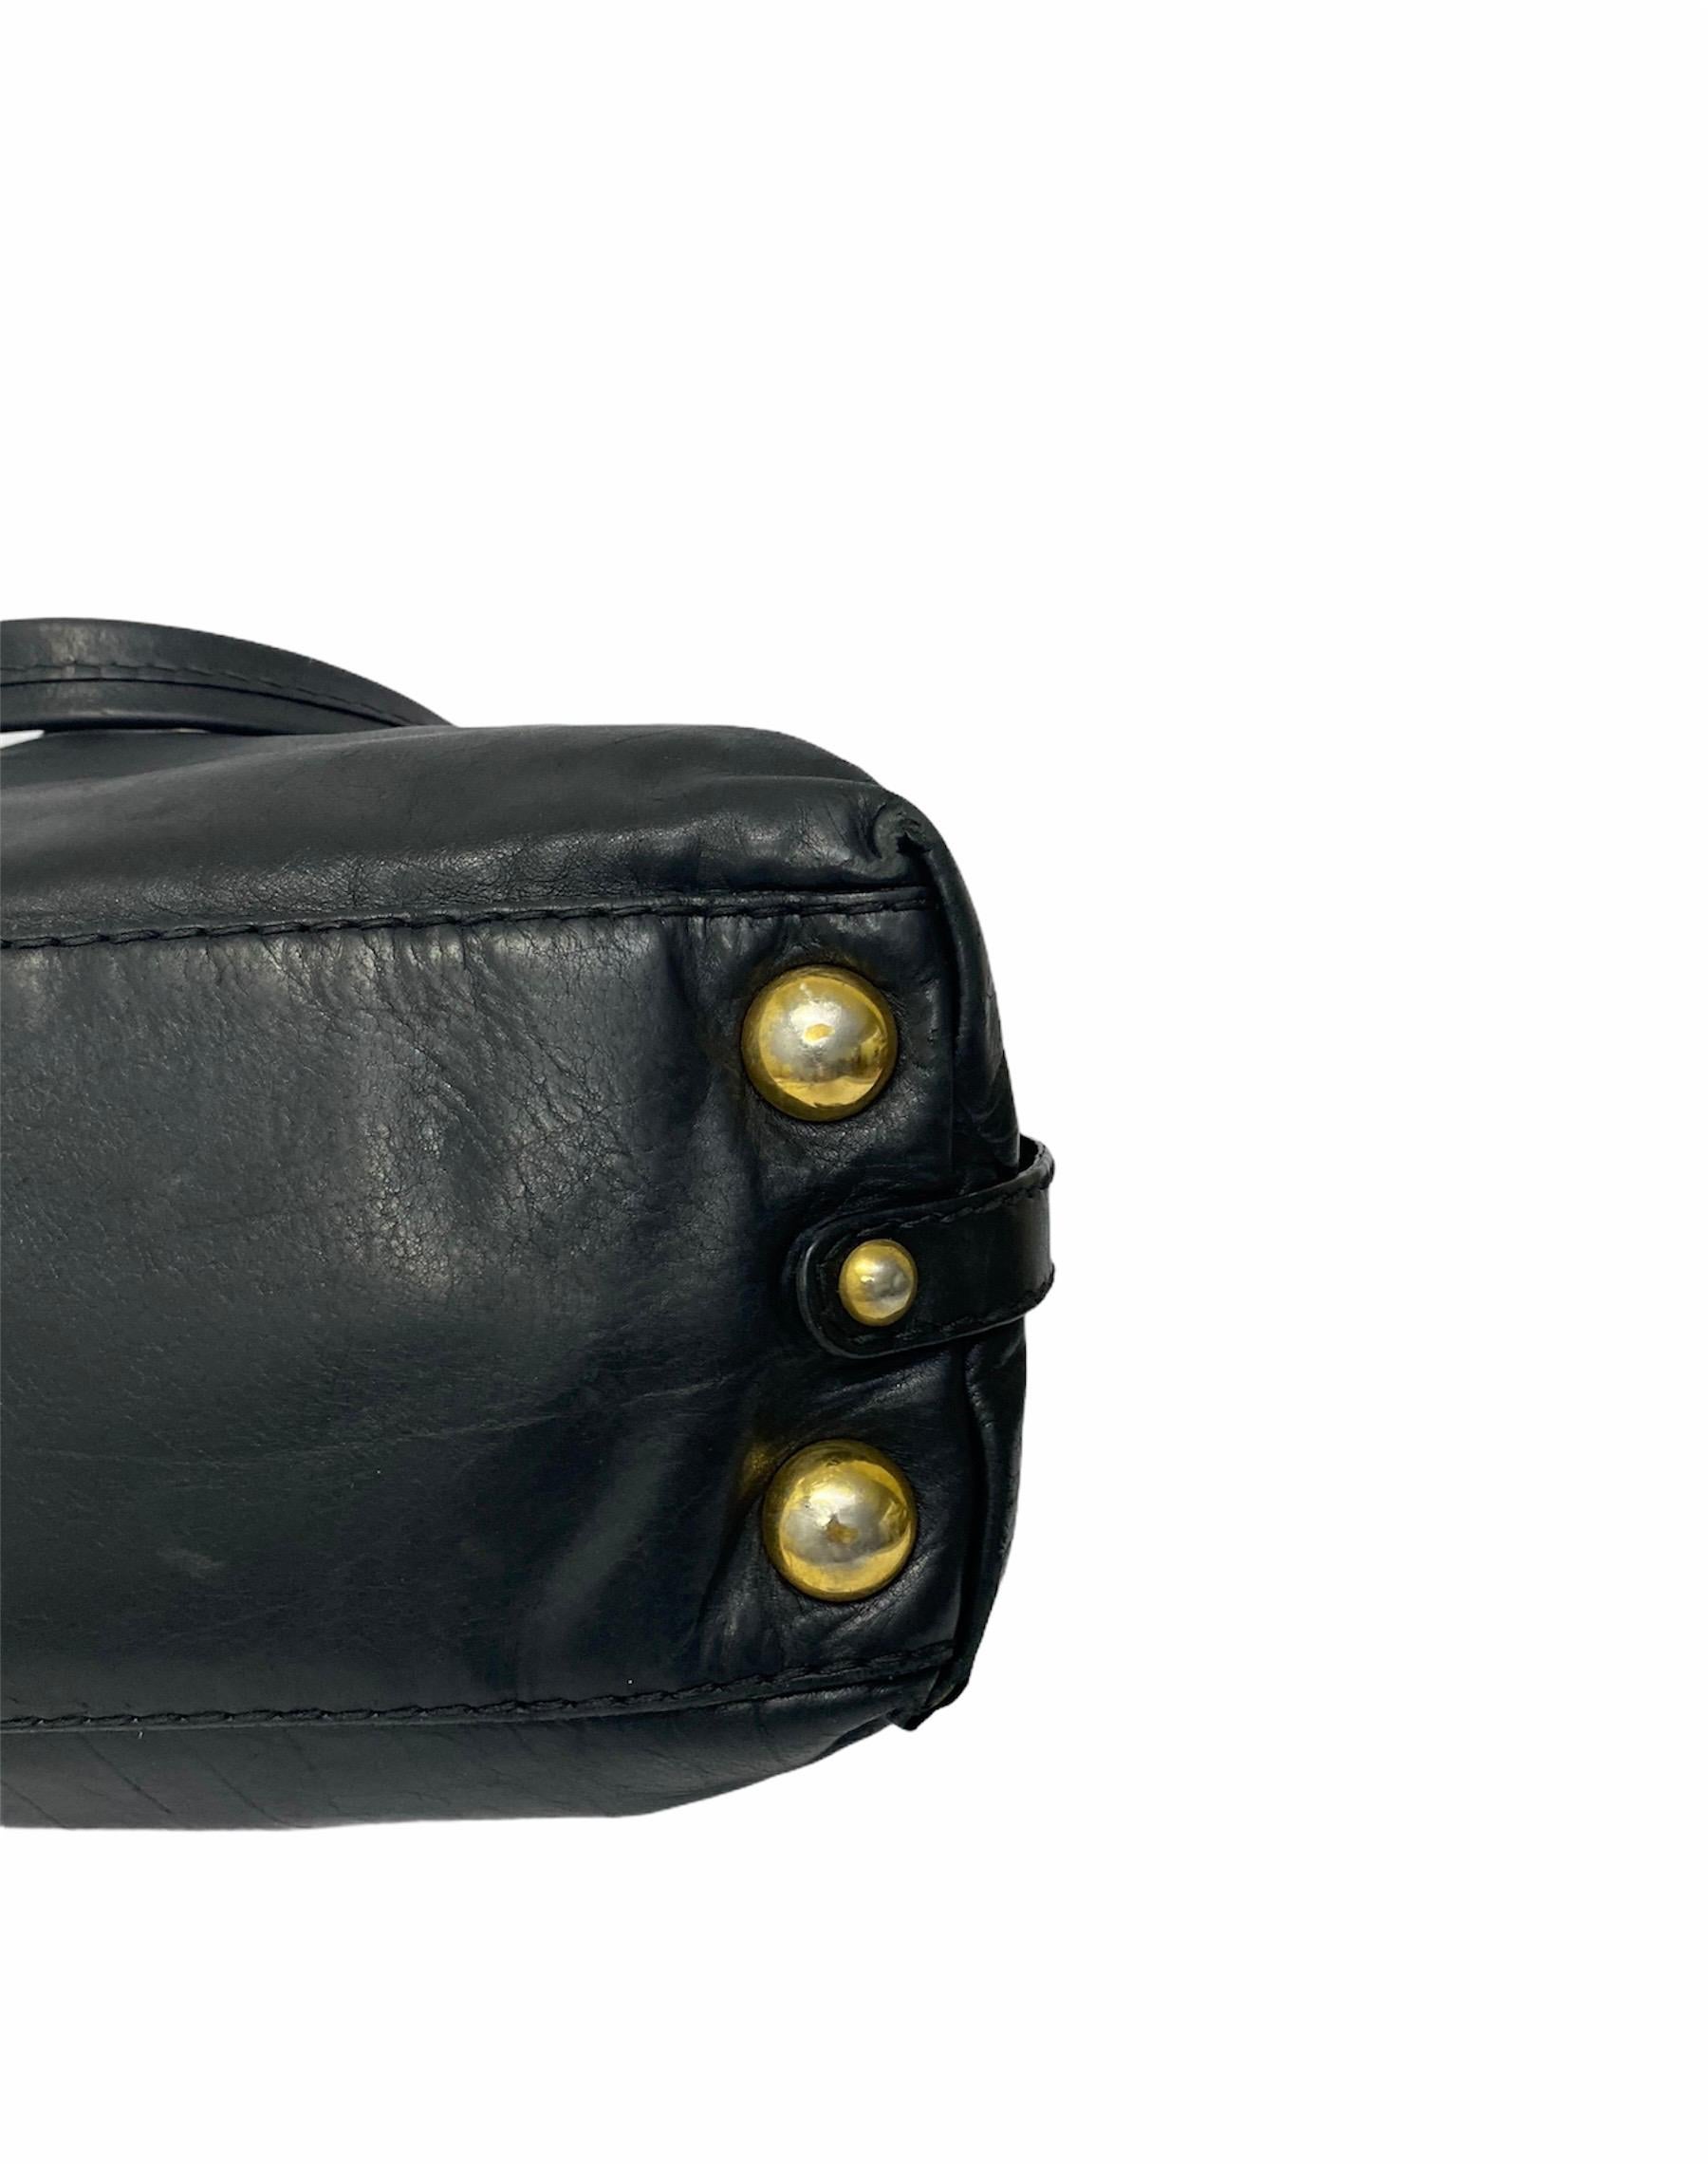 Gucci Black Leather Hysteria Bag  3